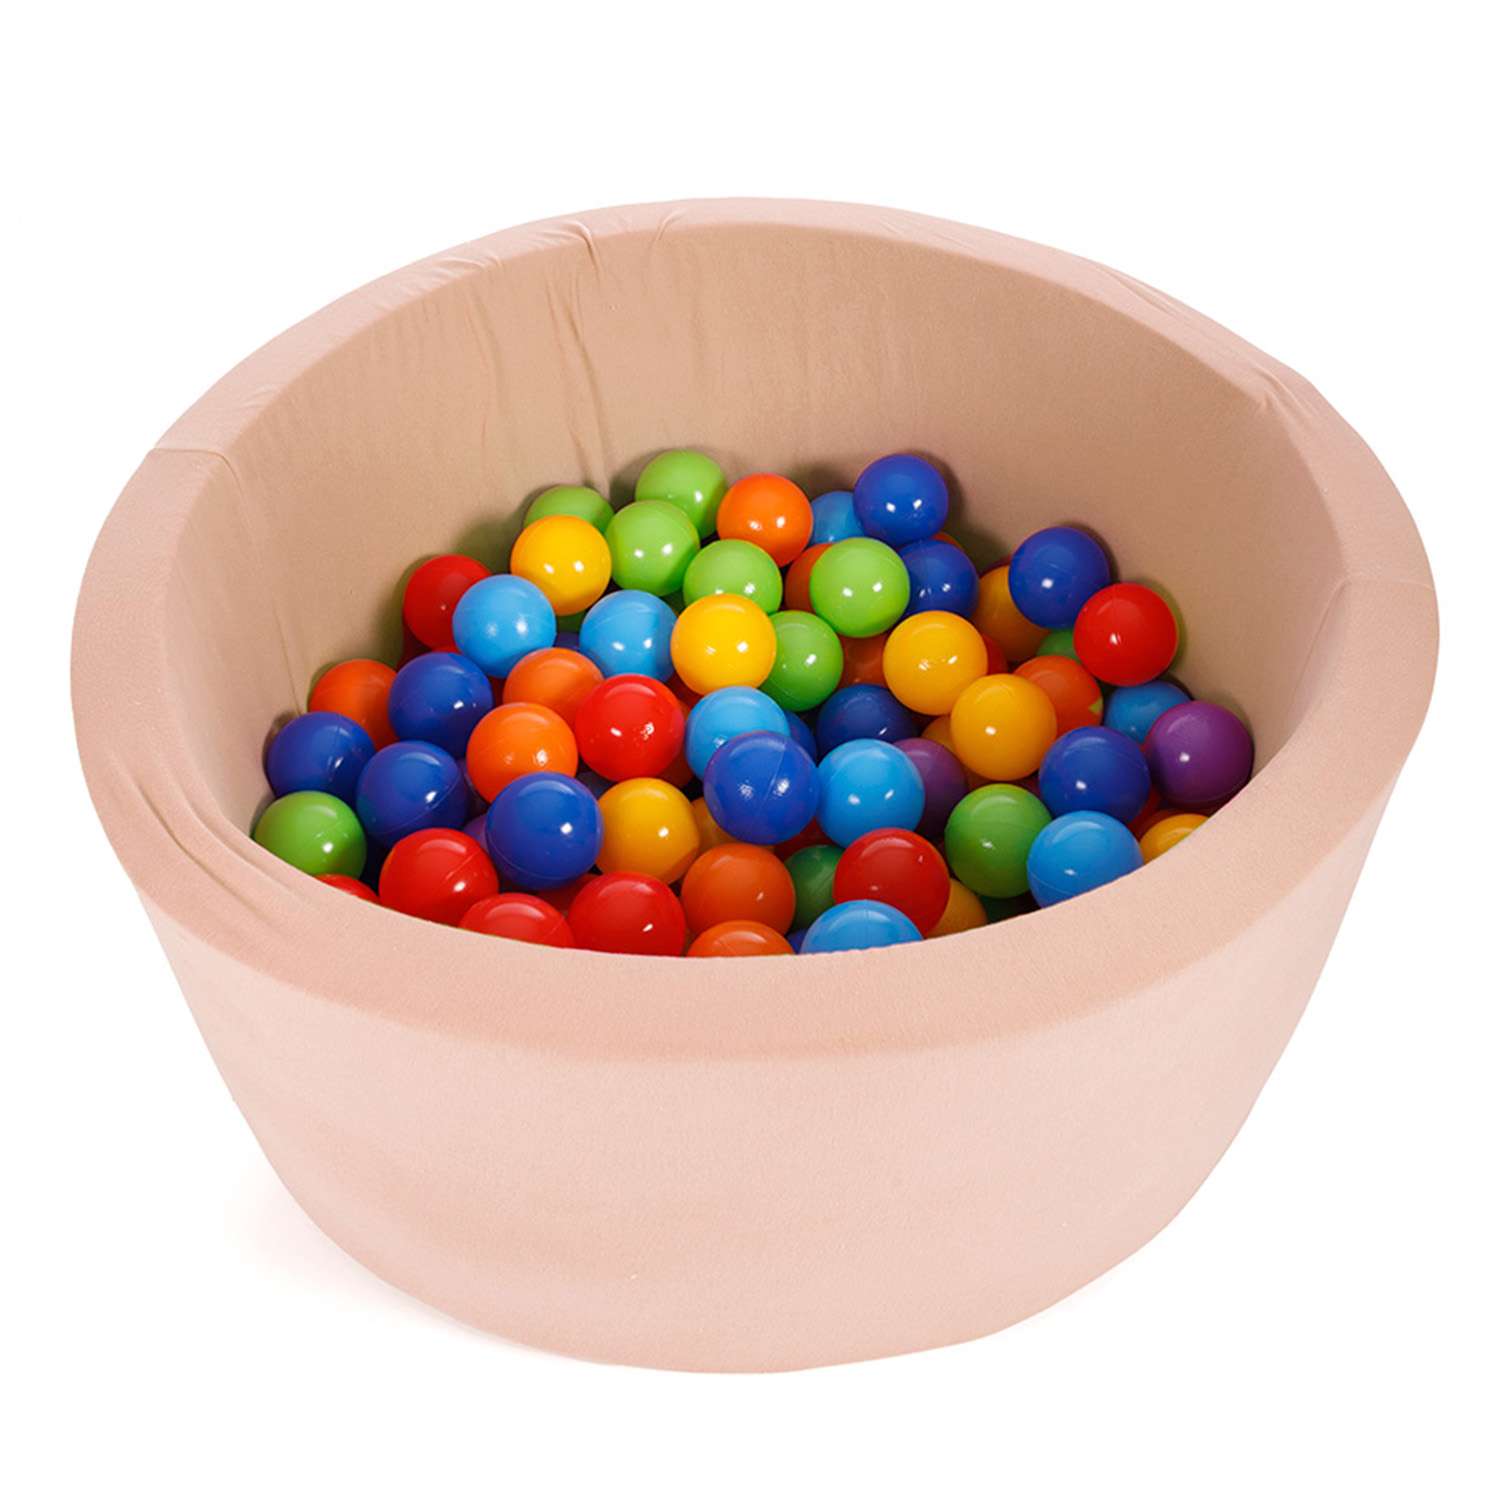 Сухой бассейн Тутси игровой с комплектом шаров поролон бежевый 160 шт d8 см 85х40 см - фото 2